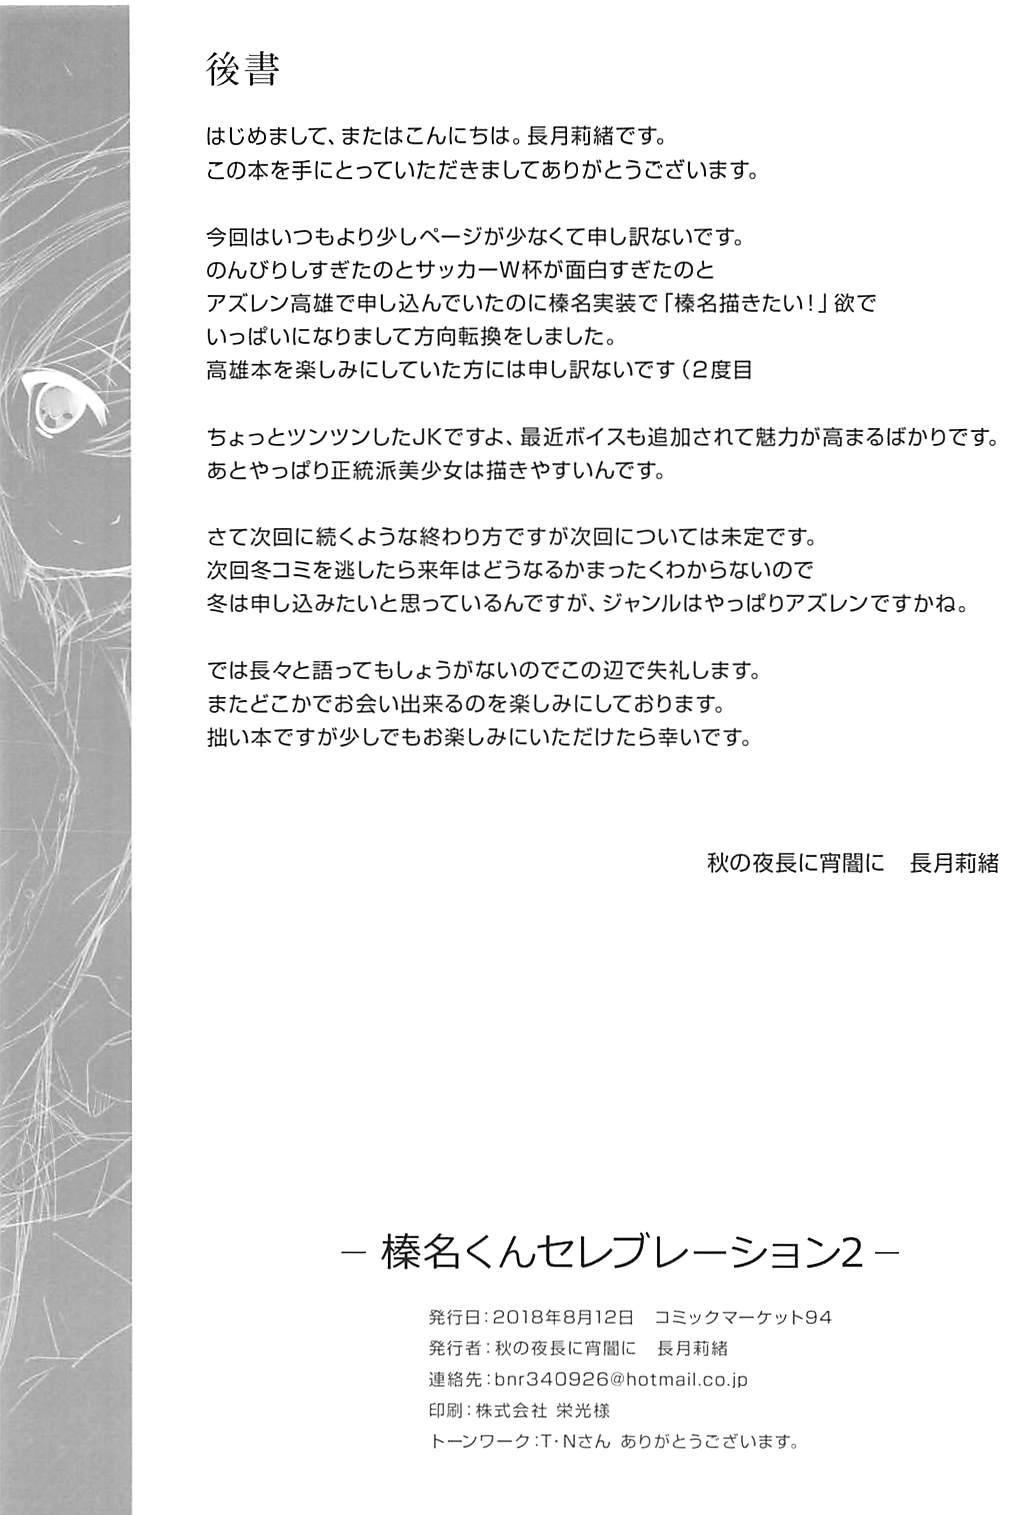 Desnuda Haruna-kun Celebration 2 - Azur lane Sentones - Page 21